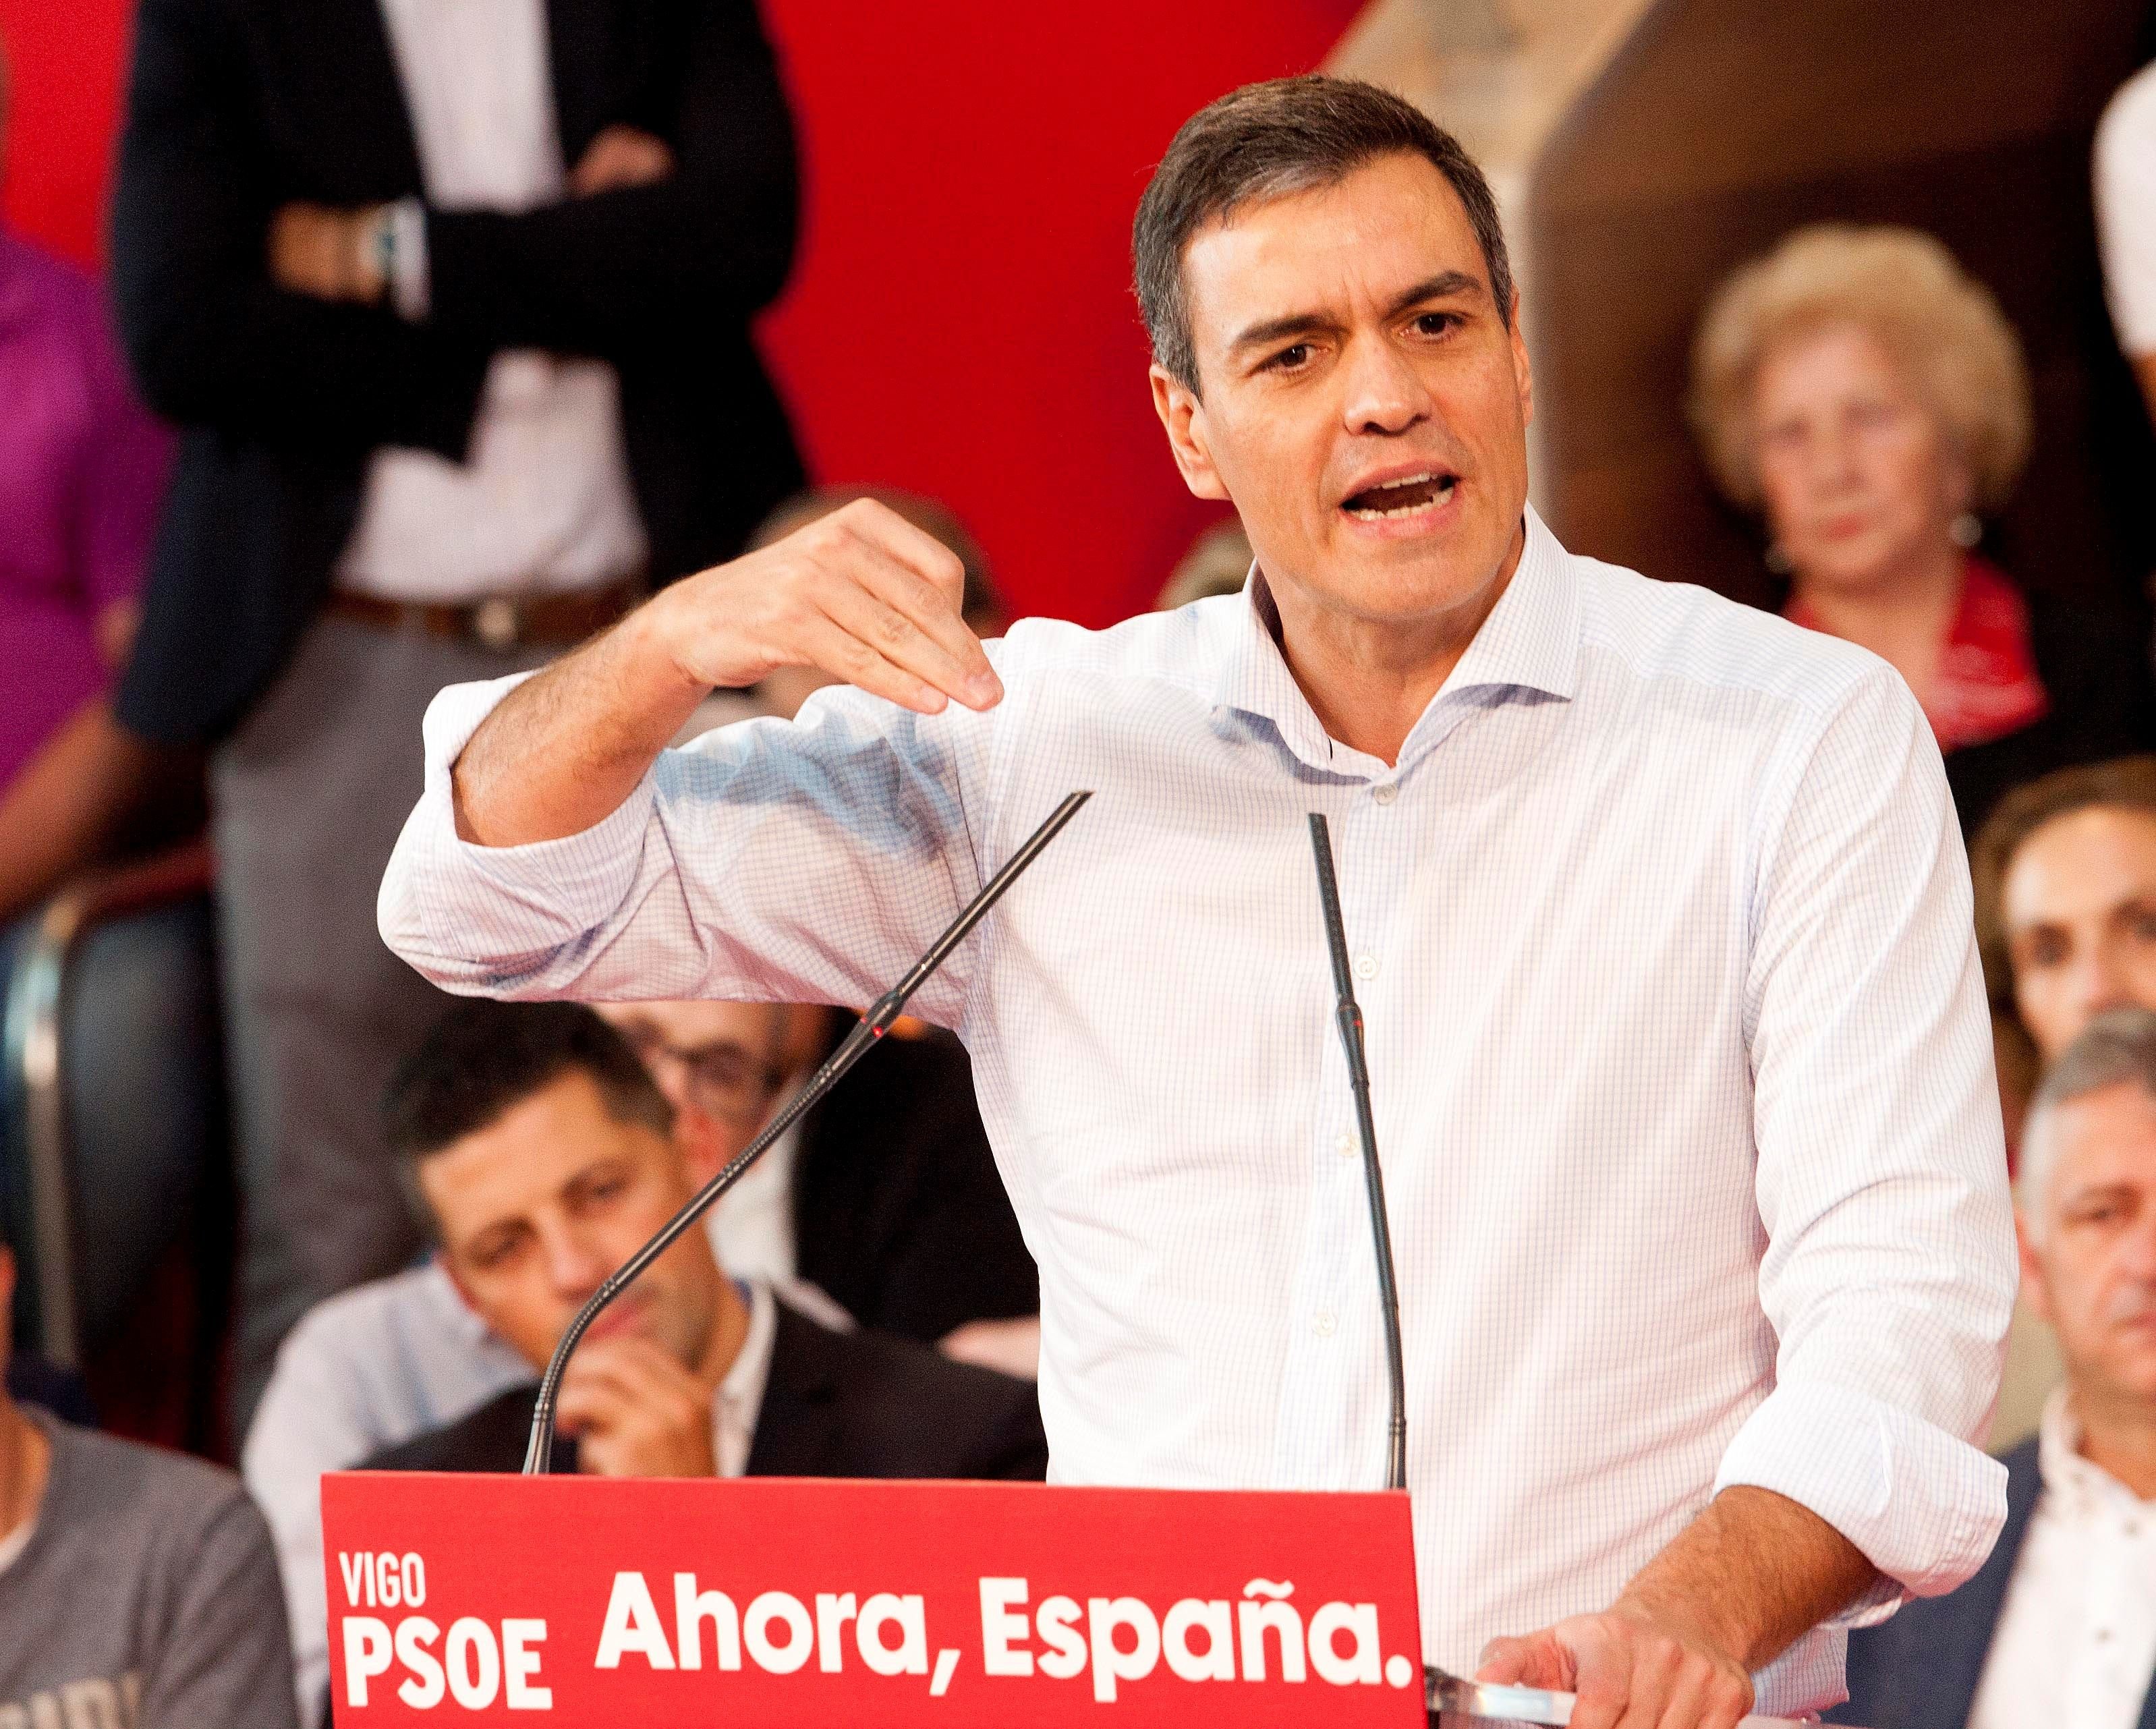 La campanya més nacionalista del PSOE, PP, Cs i Vox: "España"